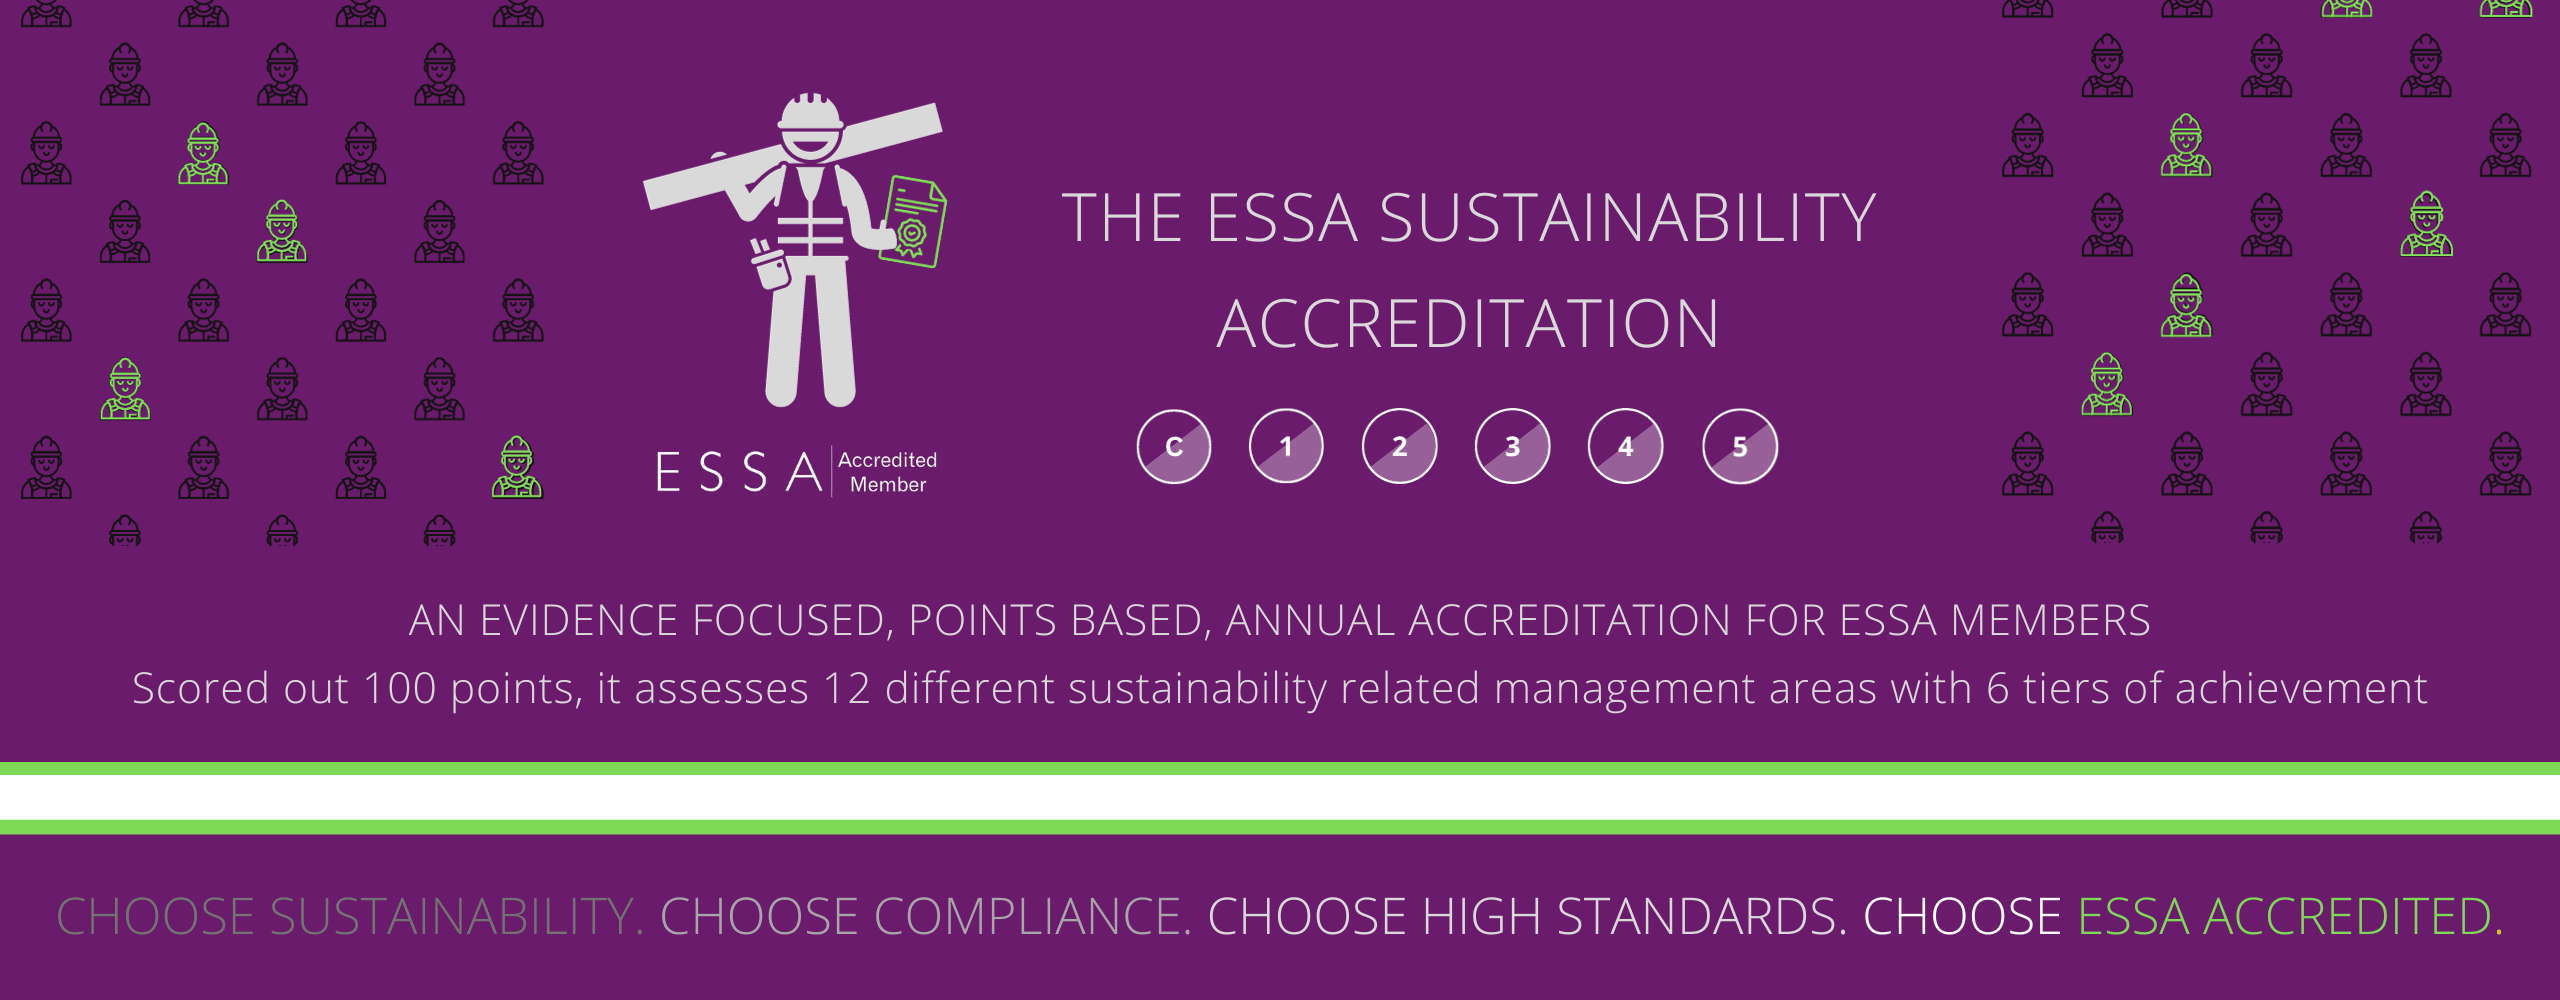 ESSA Sustainability ACCREDBanner